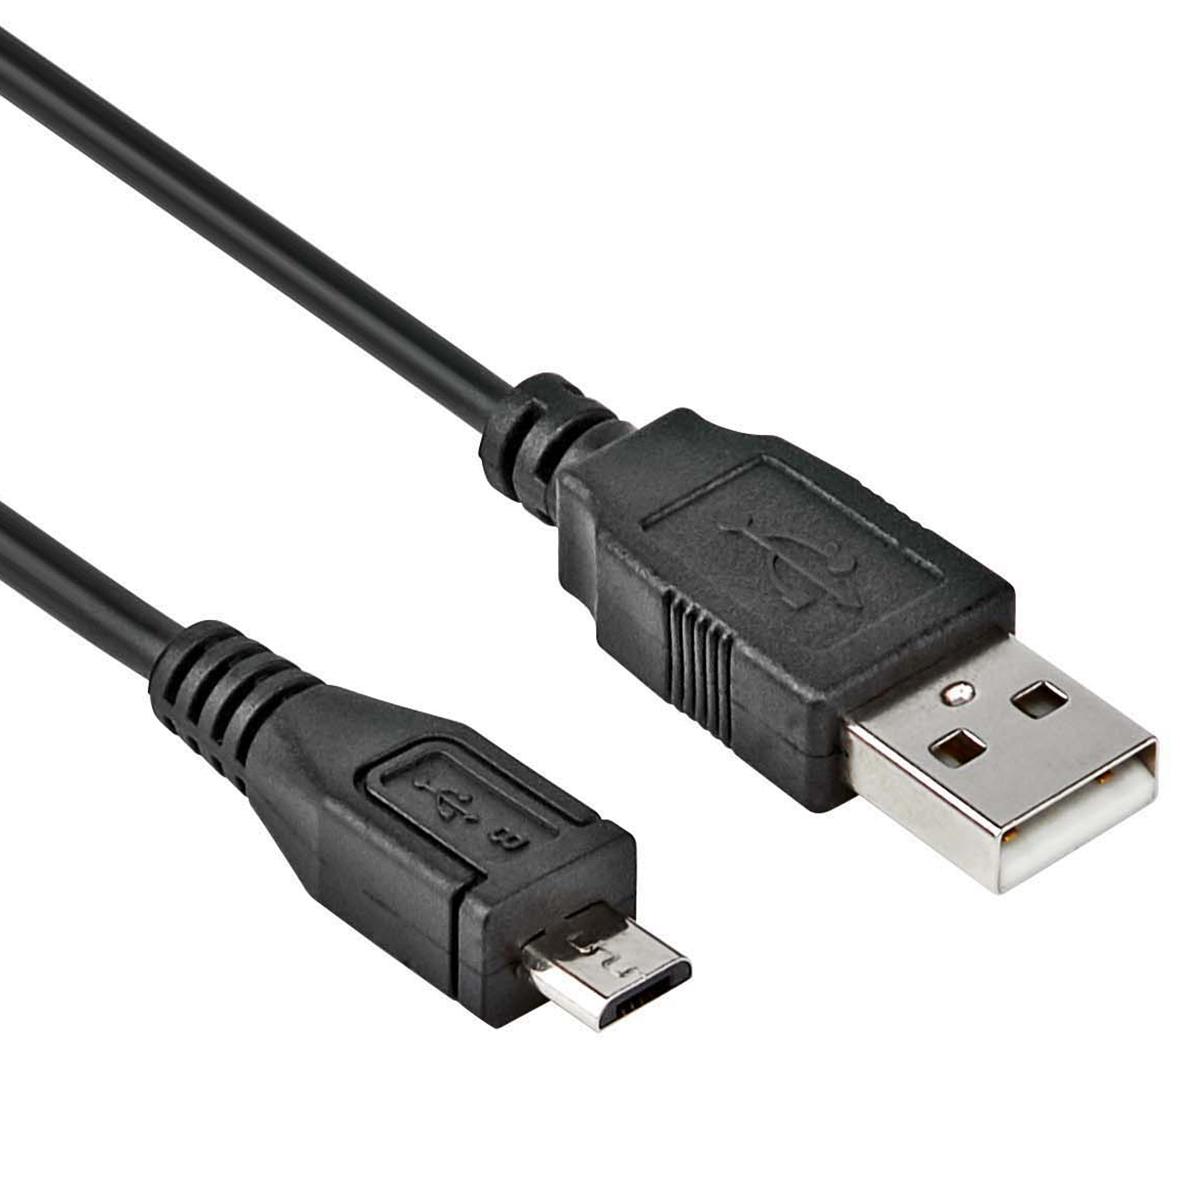 Samsung Galaxy S3 mini USB Kabel - Allteq